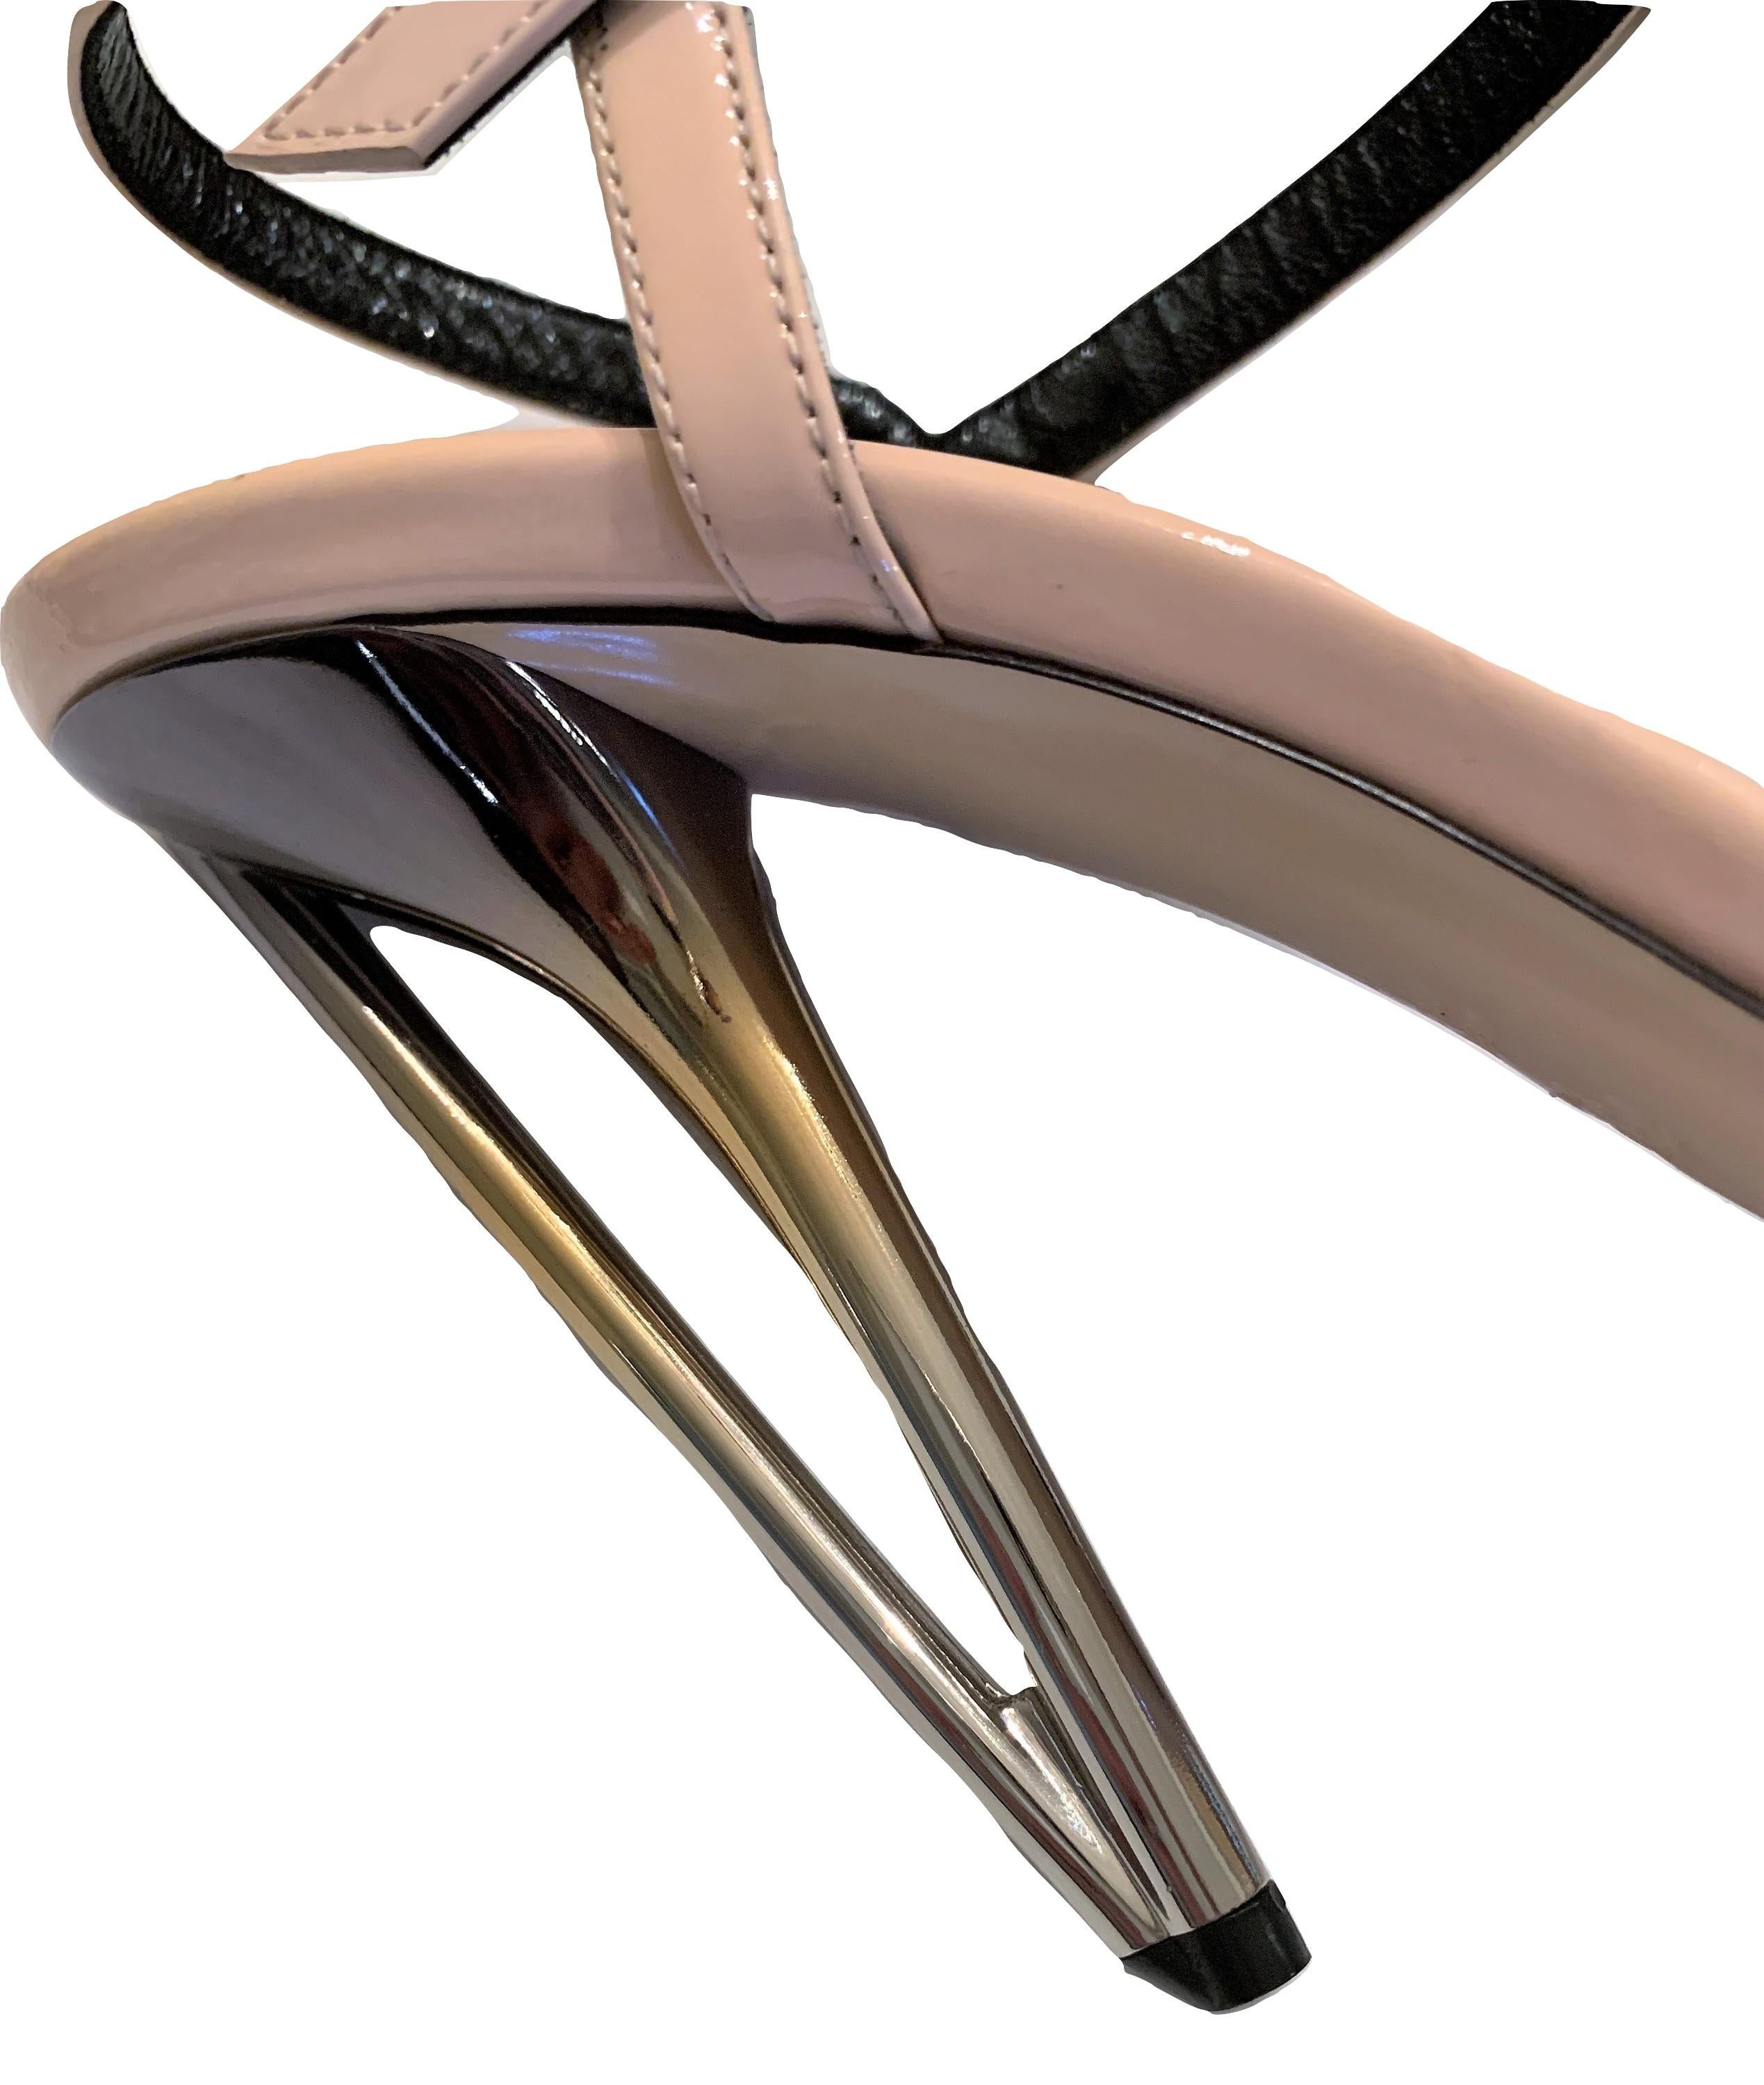 New Fendi Karl Lagerfeld Runway Spring 2014 Heels Sandals Sz 40 4